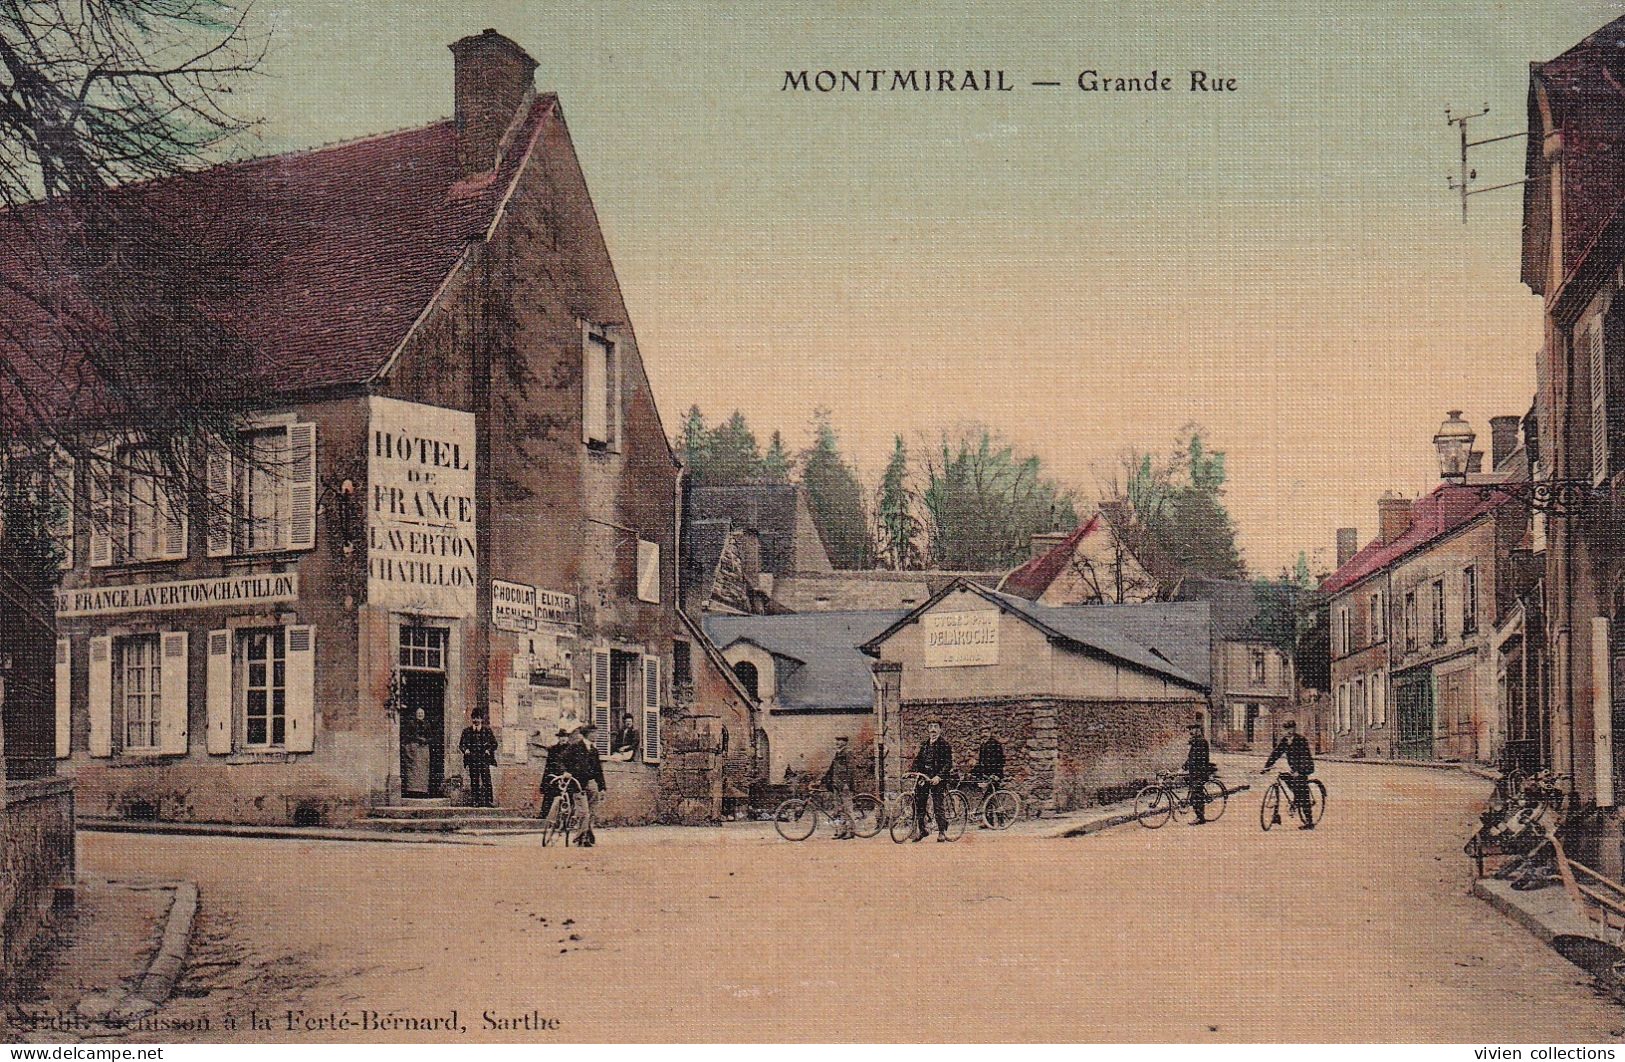 Montmirail (72 Sarthe) Grande Rue - Hôtel De France Laverton Chatillon Cycles Pax Delaroche - édit. Grénisson Toilée - Montmirail